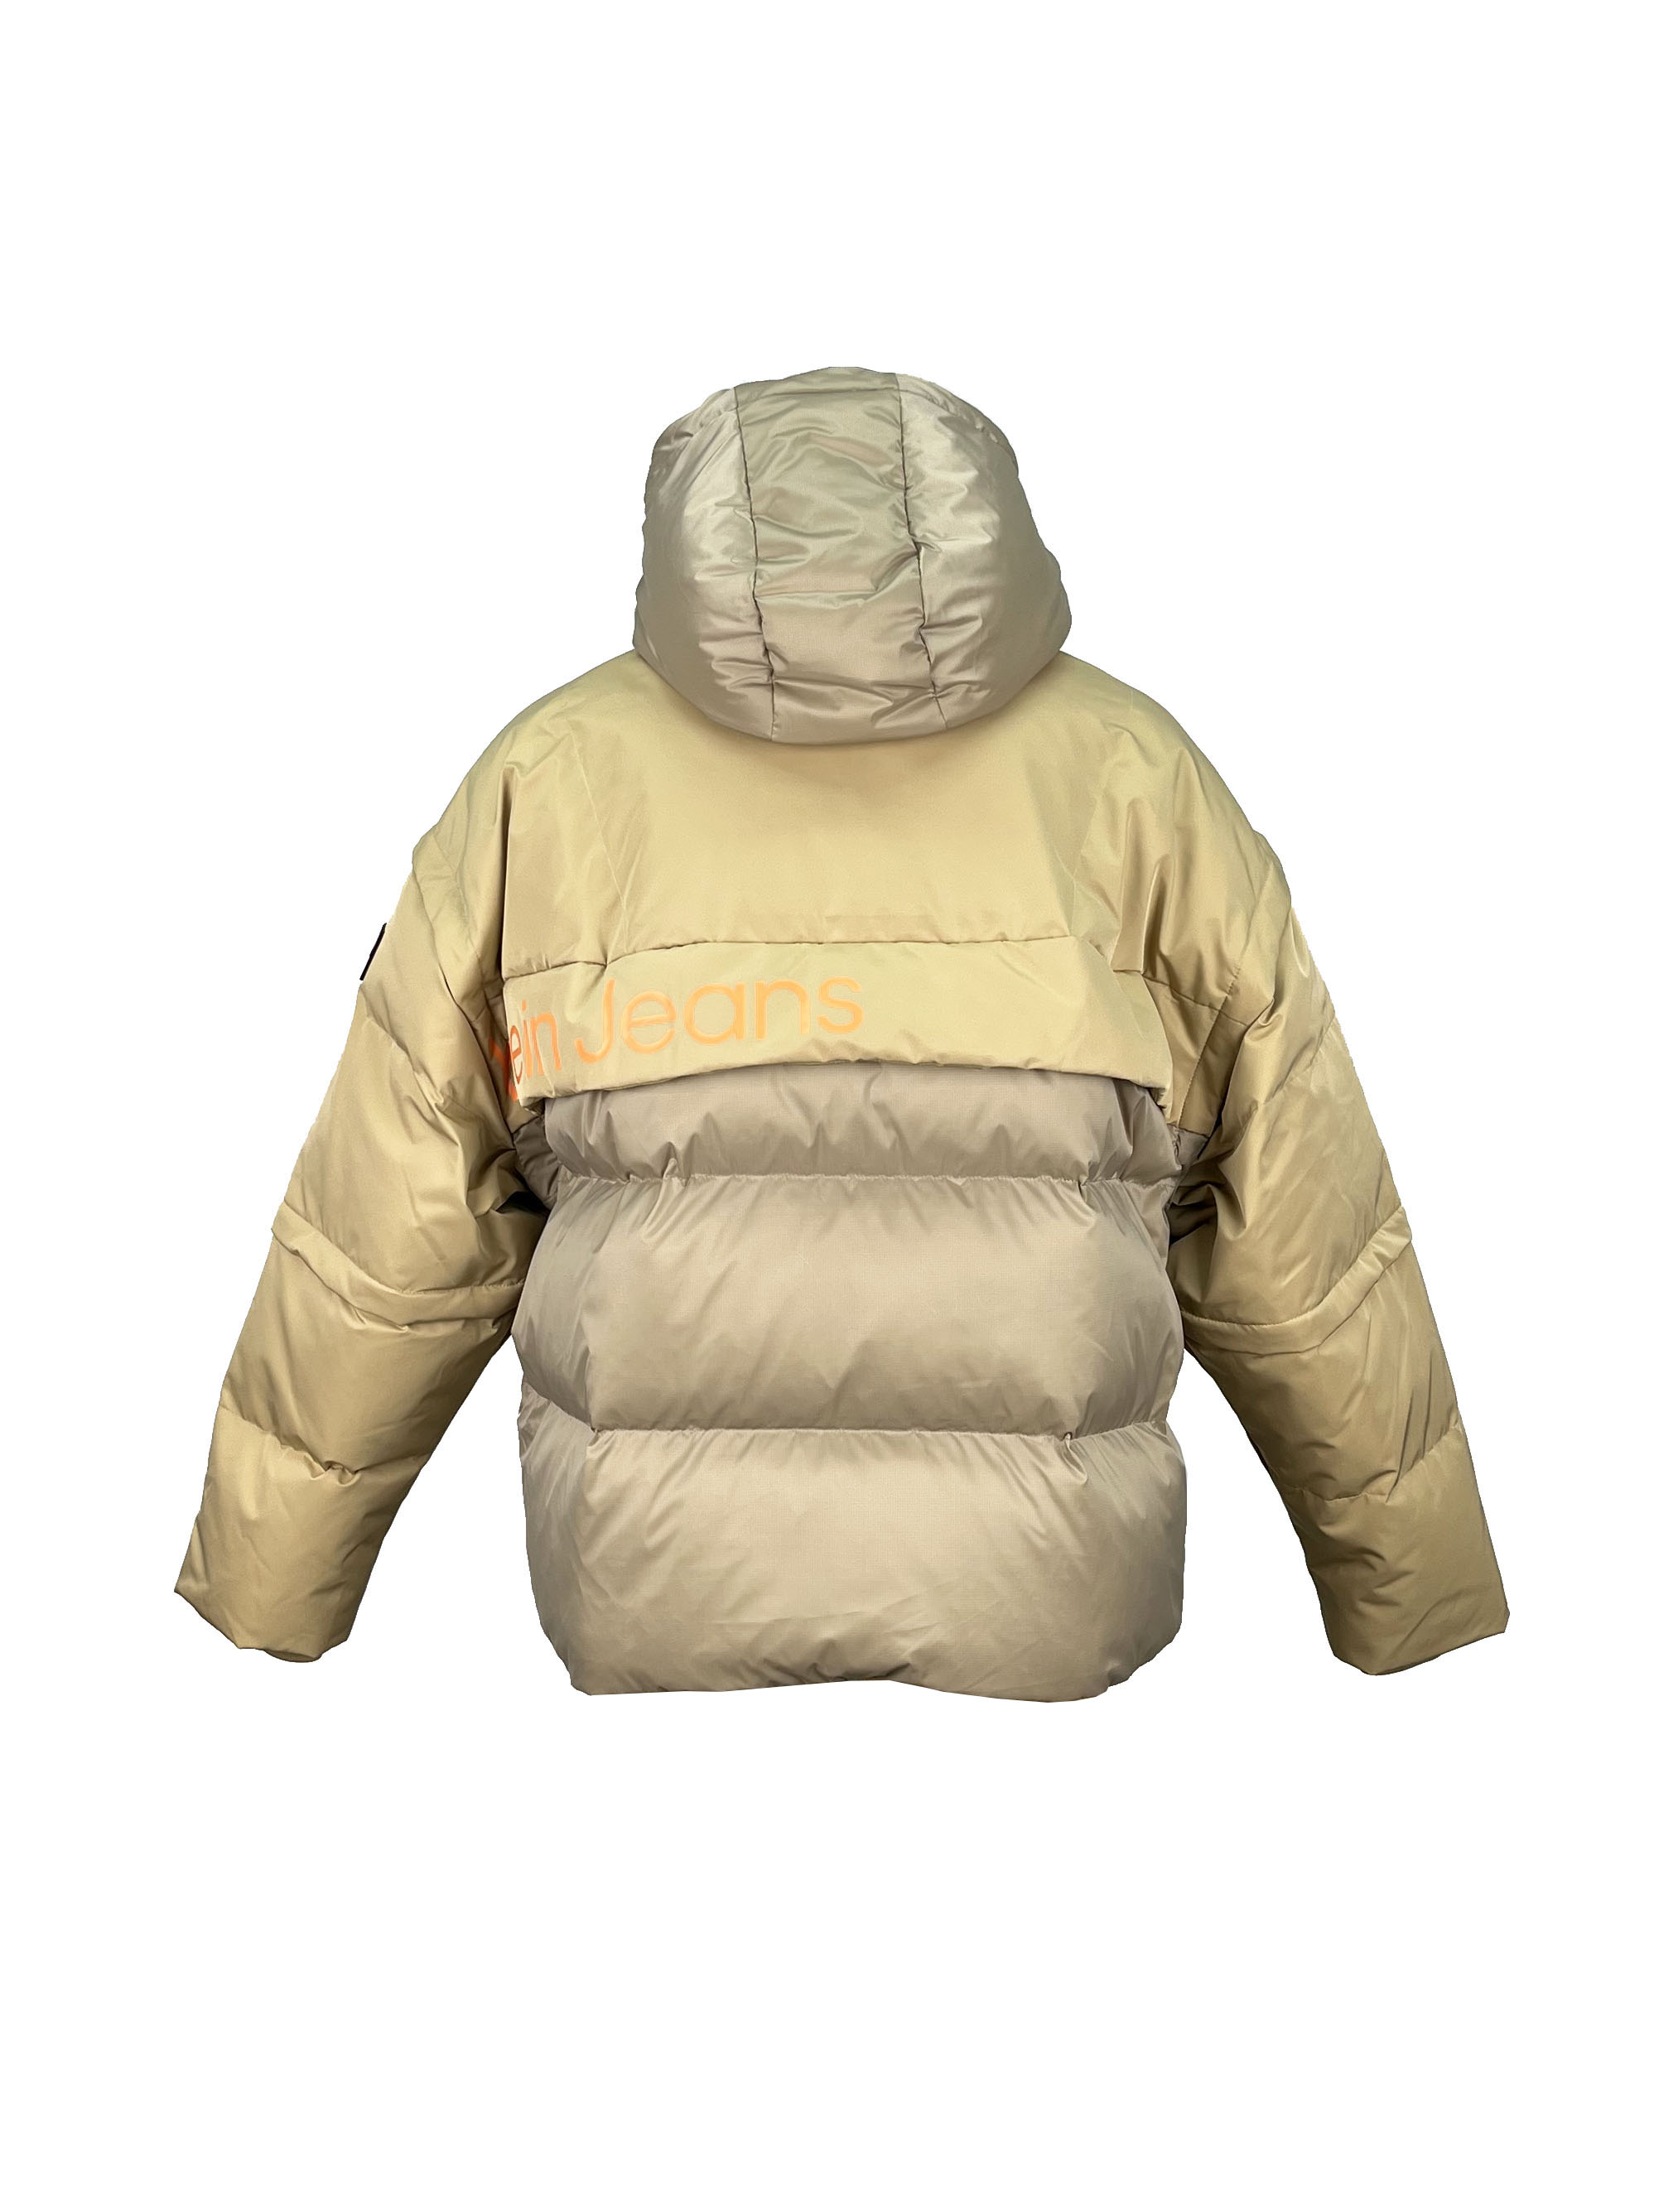 5.padded jacket. (3)